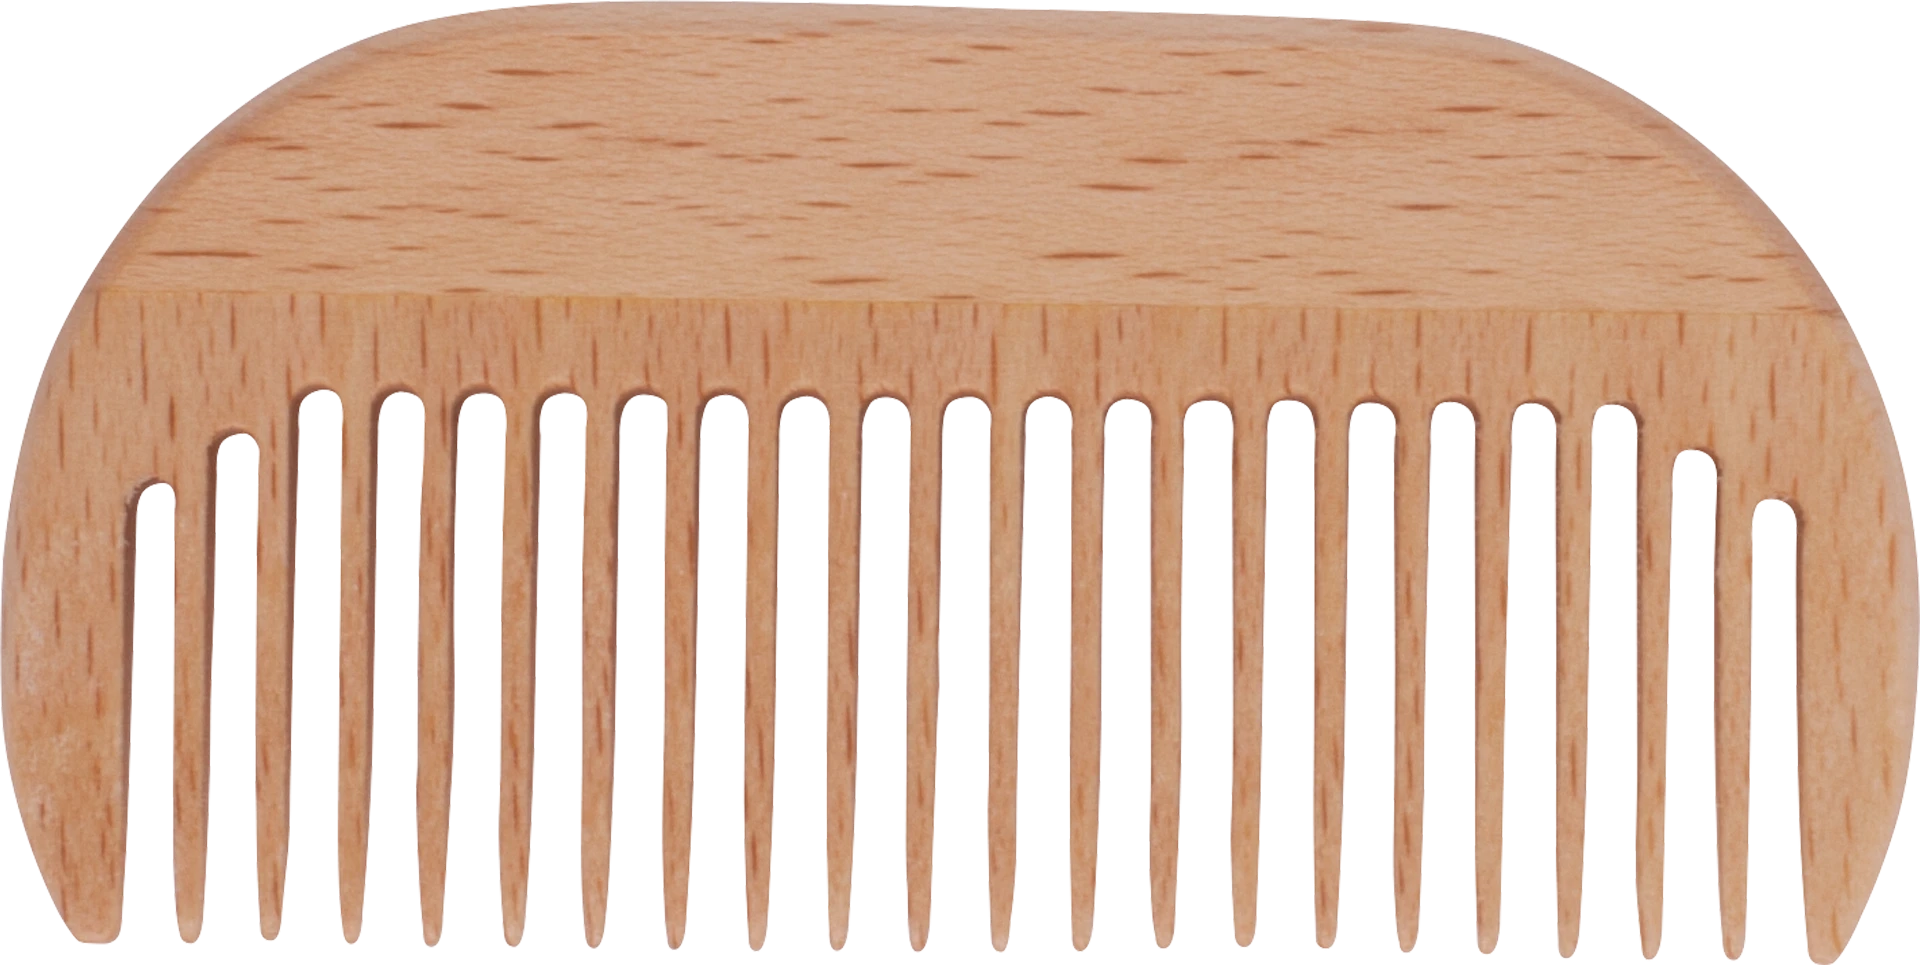 pocket comb